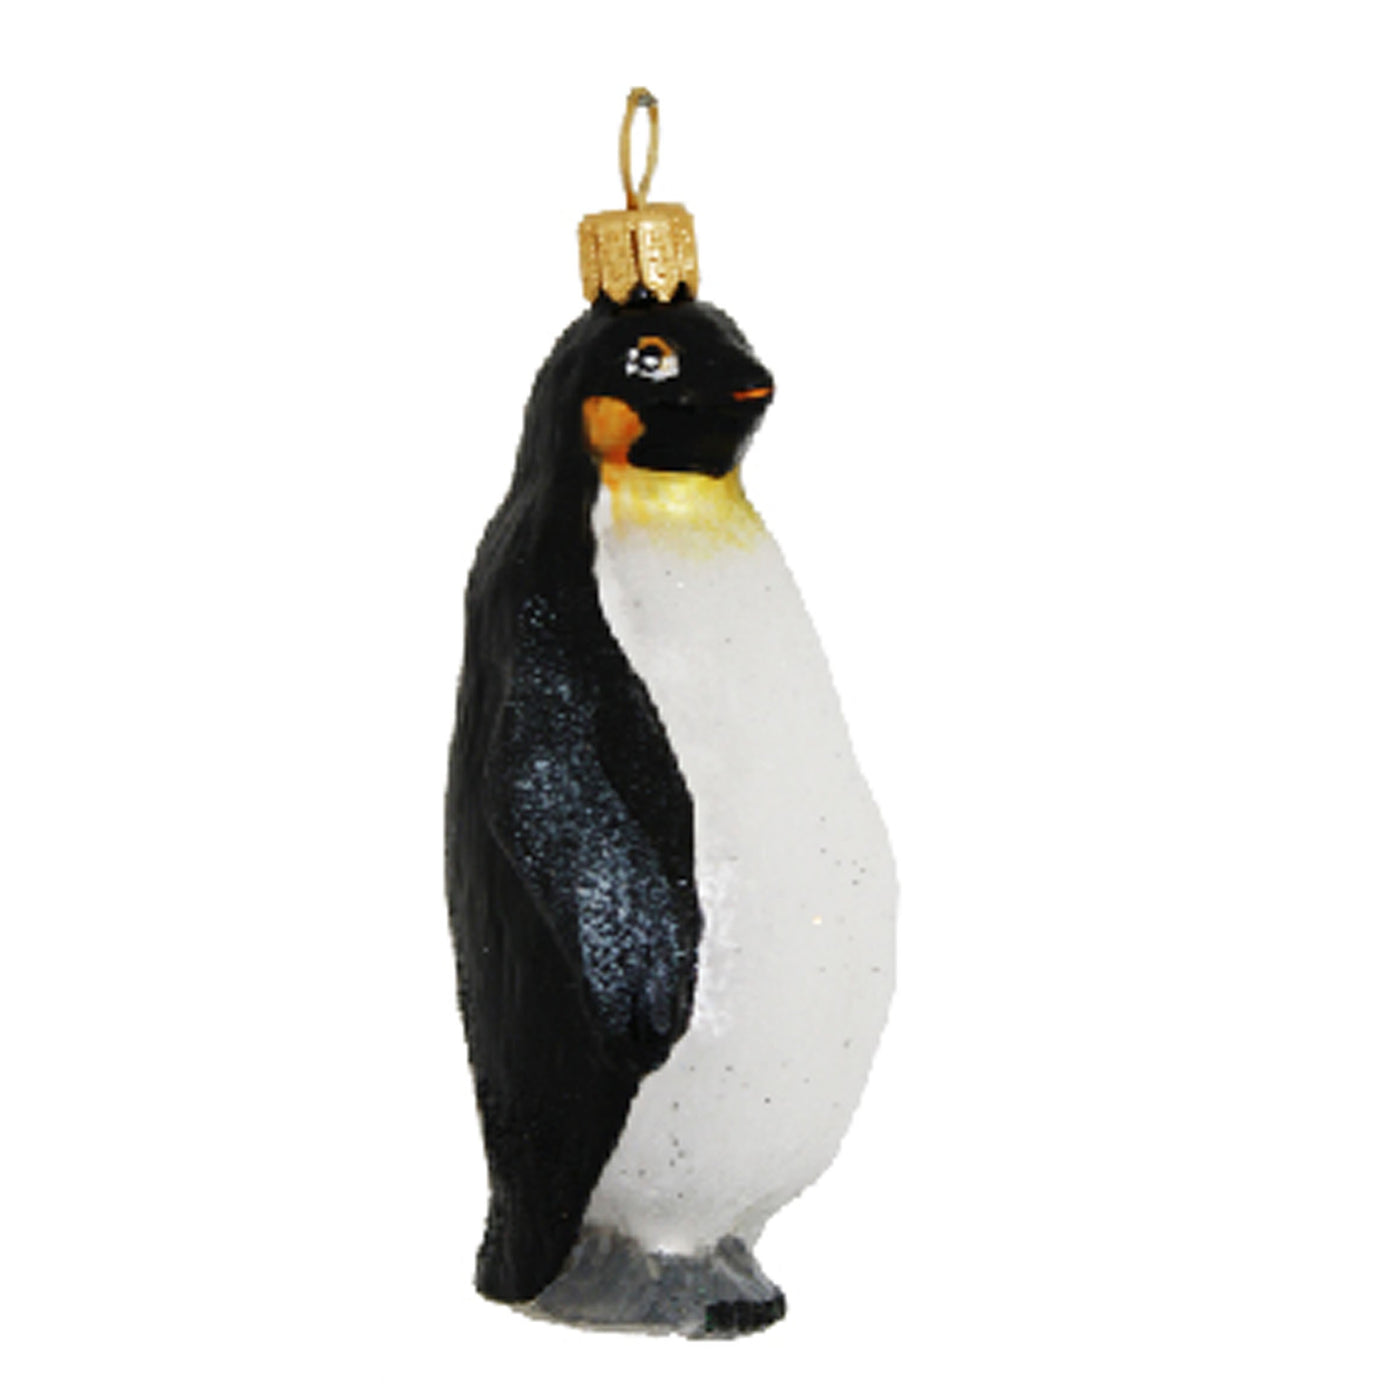 Pingvin 1